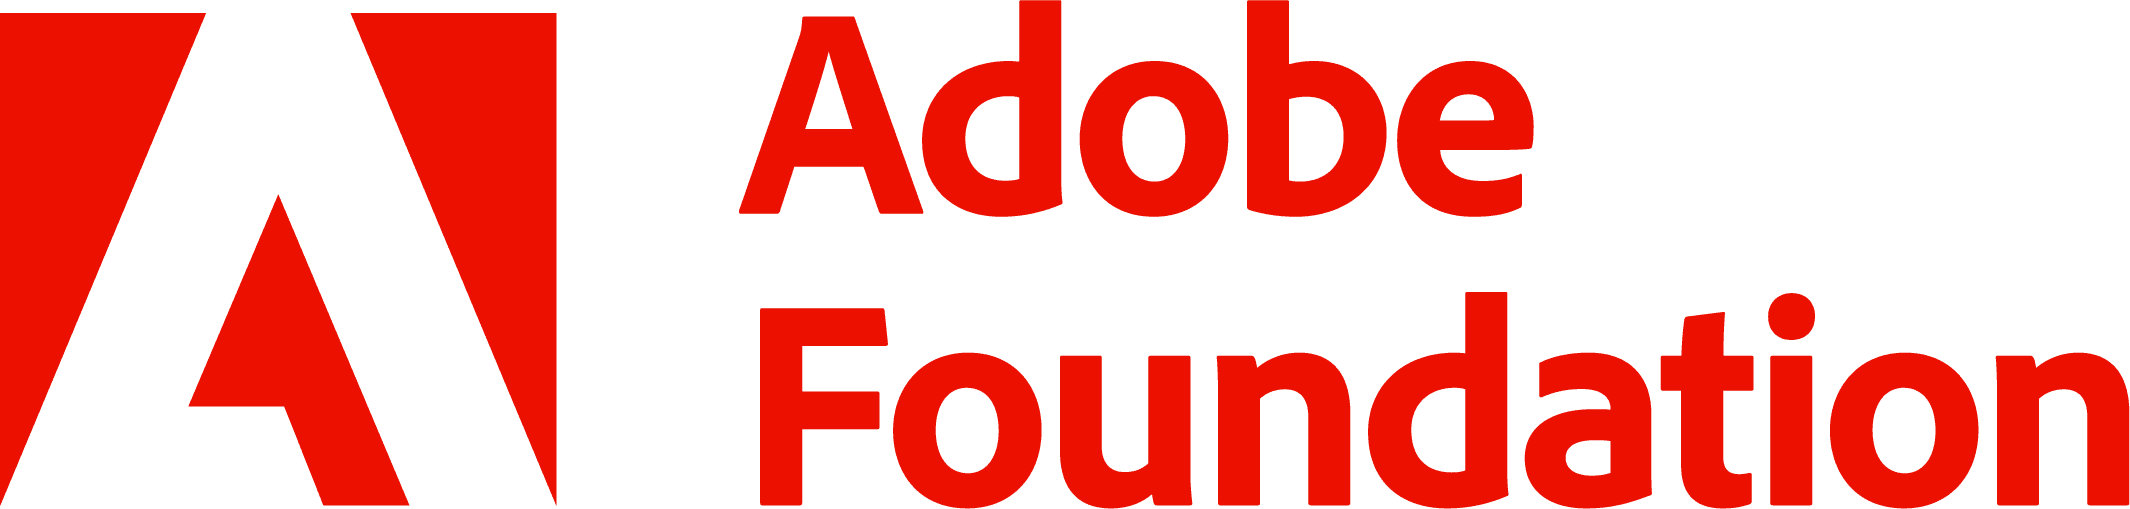 Adobe Foundation Logo